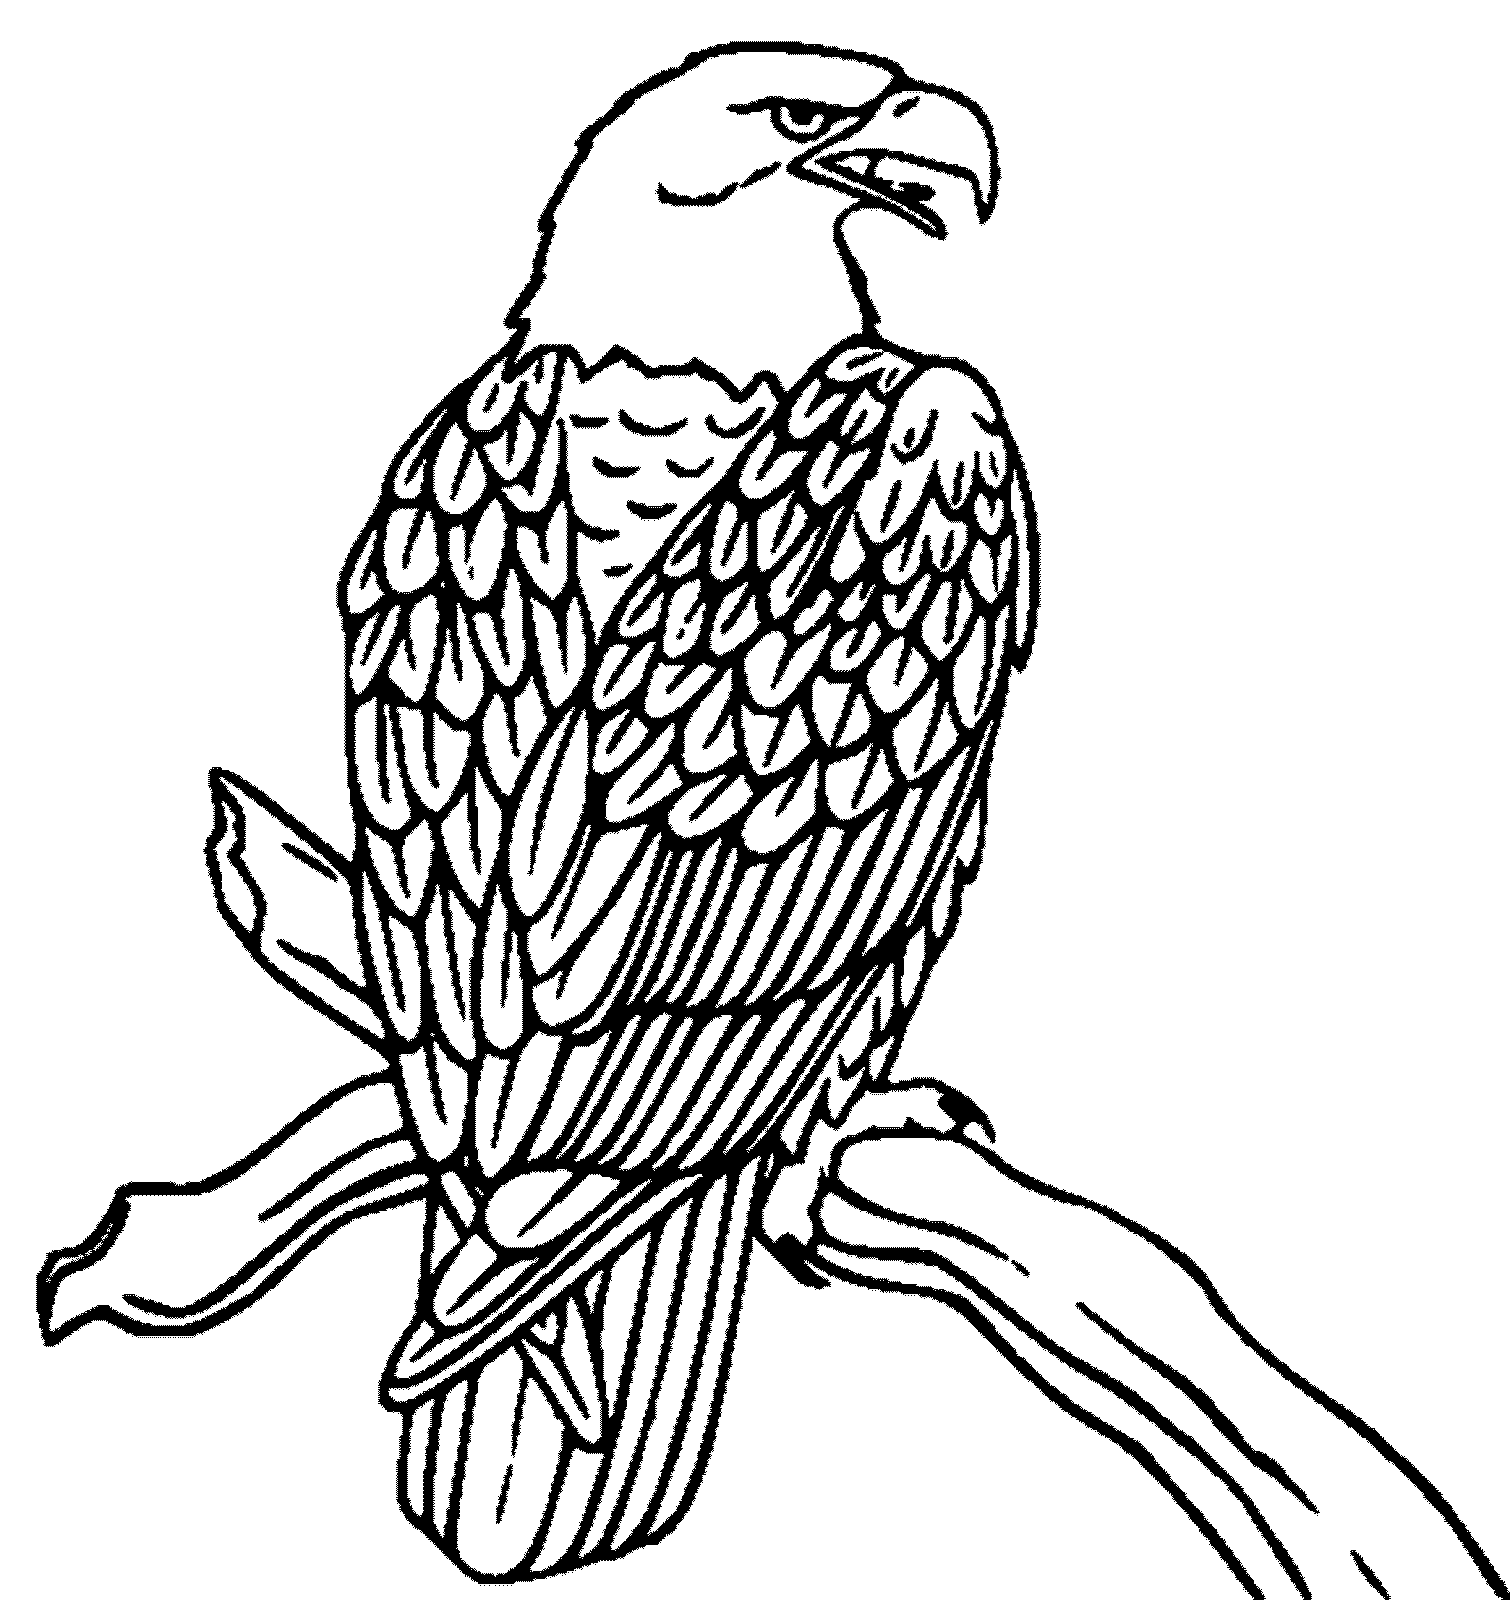 Kumpulan Gambar Karikatur Burung Garuda Puzzze